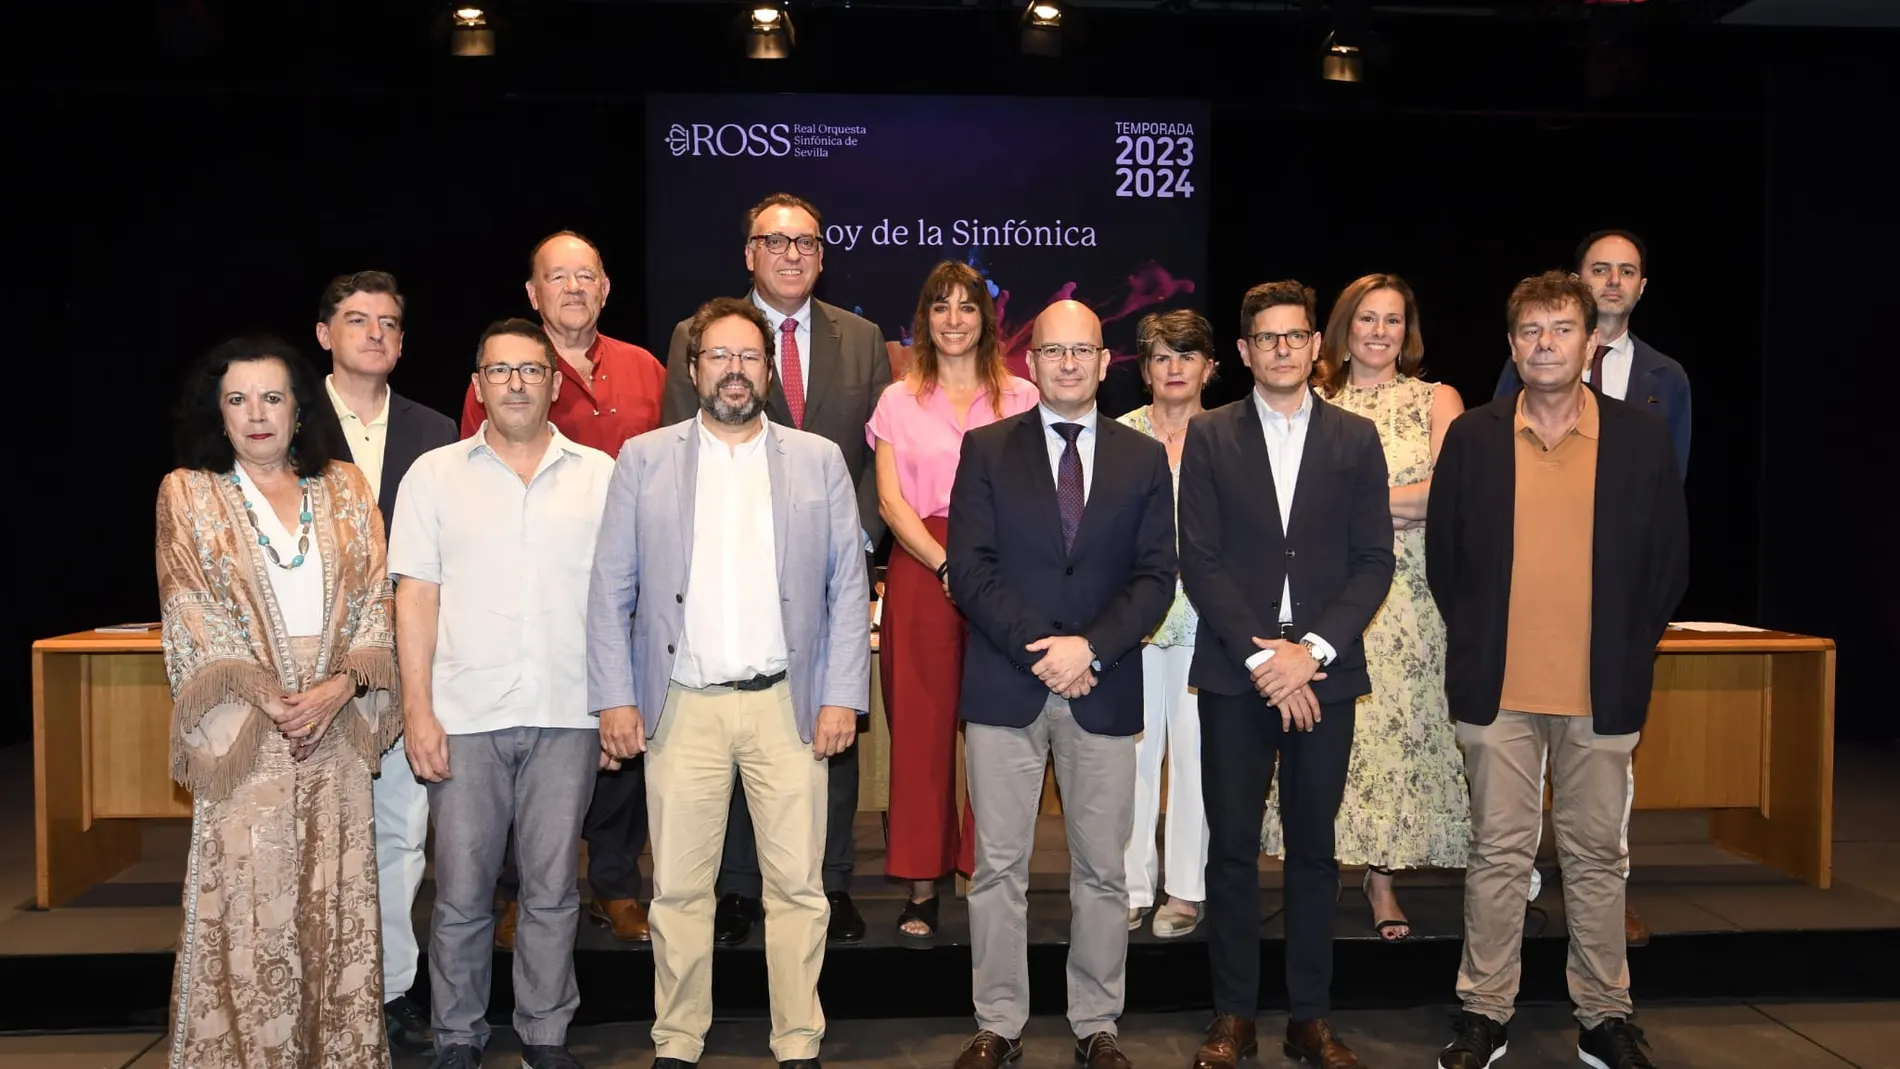 Los patrocinadores, entre los que se encuentra José Lugo, delegado de LA RAZÓN en Andalucía, posan junto a María Marí-Pérez, Marc Soustrot y Arturo Bernal, en la presentación de la Temporada 2023-2024 de la ROSS